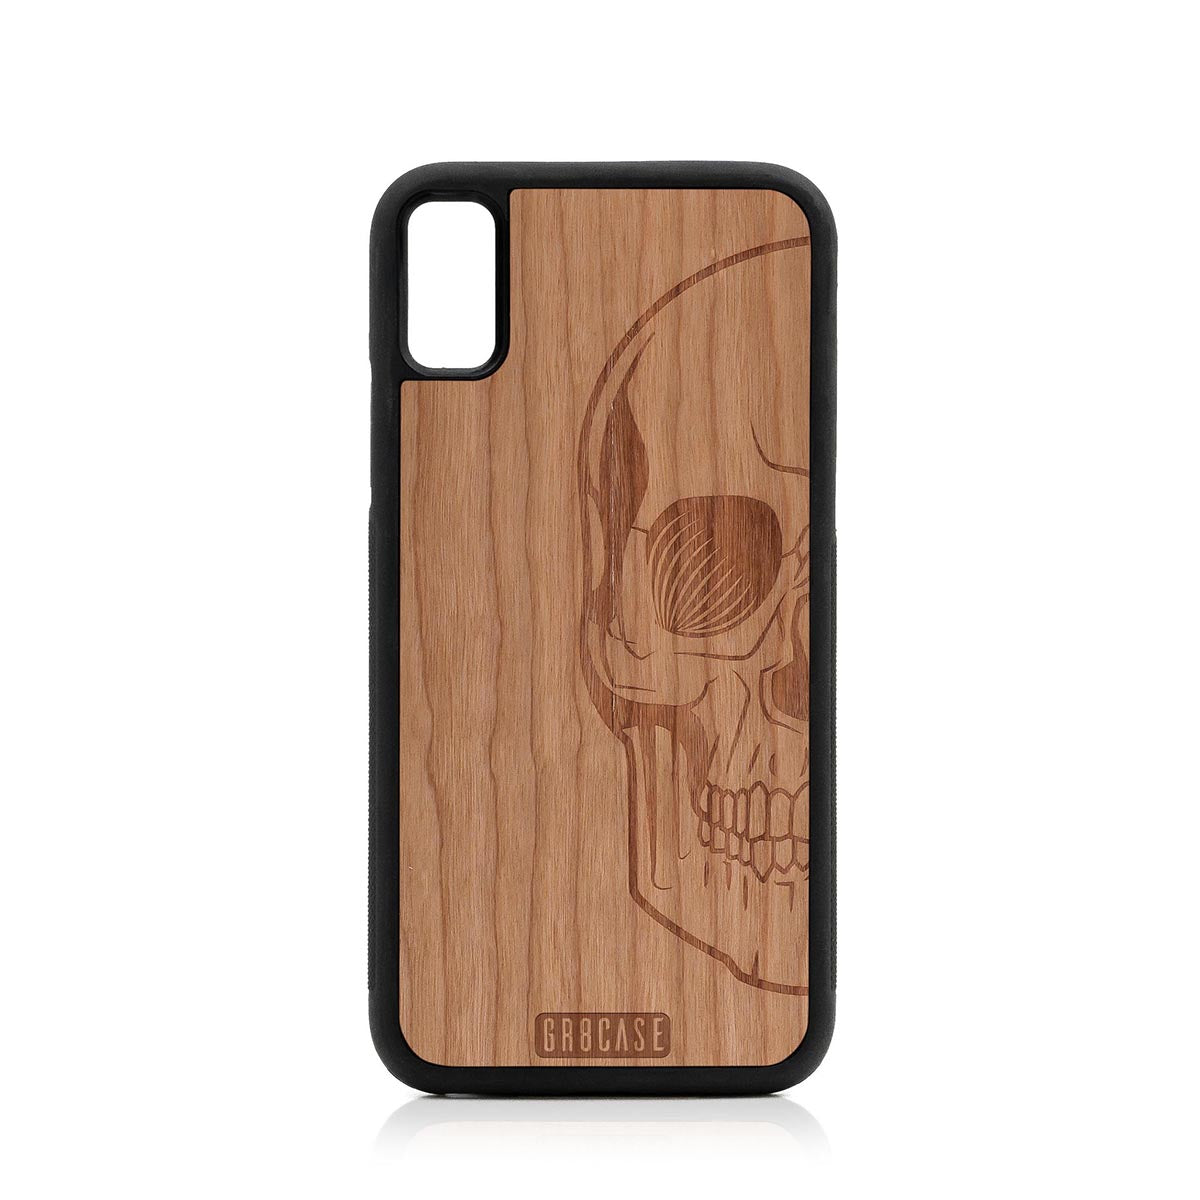 Half Skull Design Wood Case For iPhone XR by GR8CASE